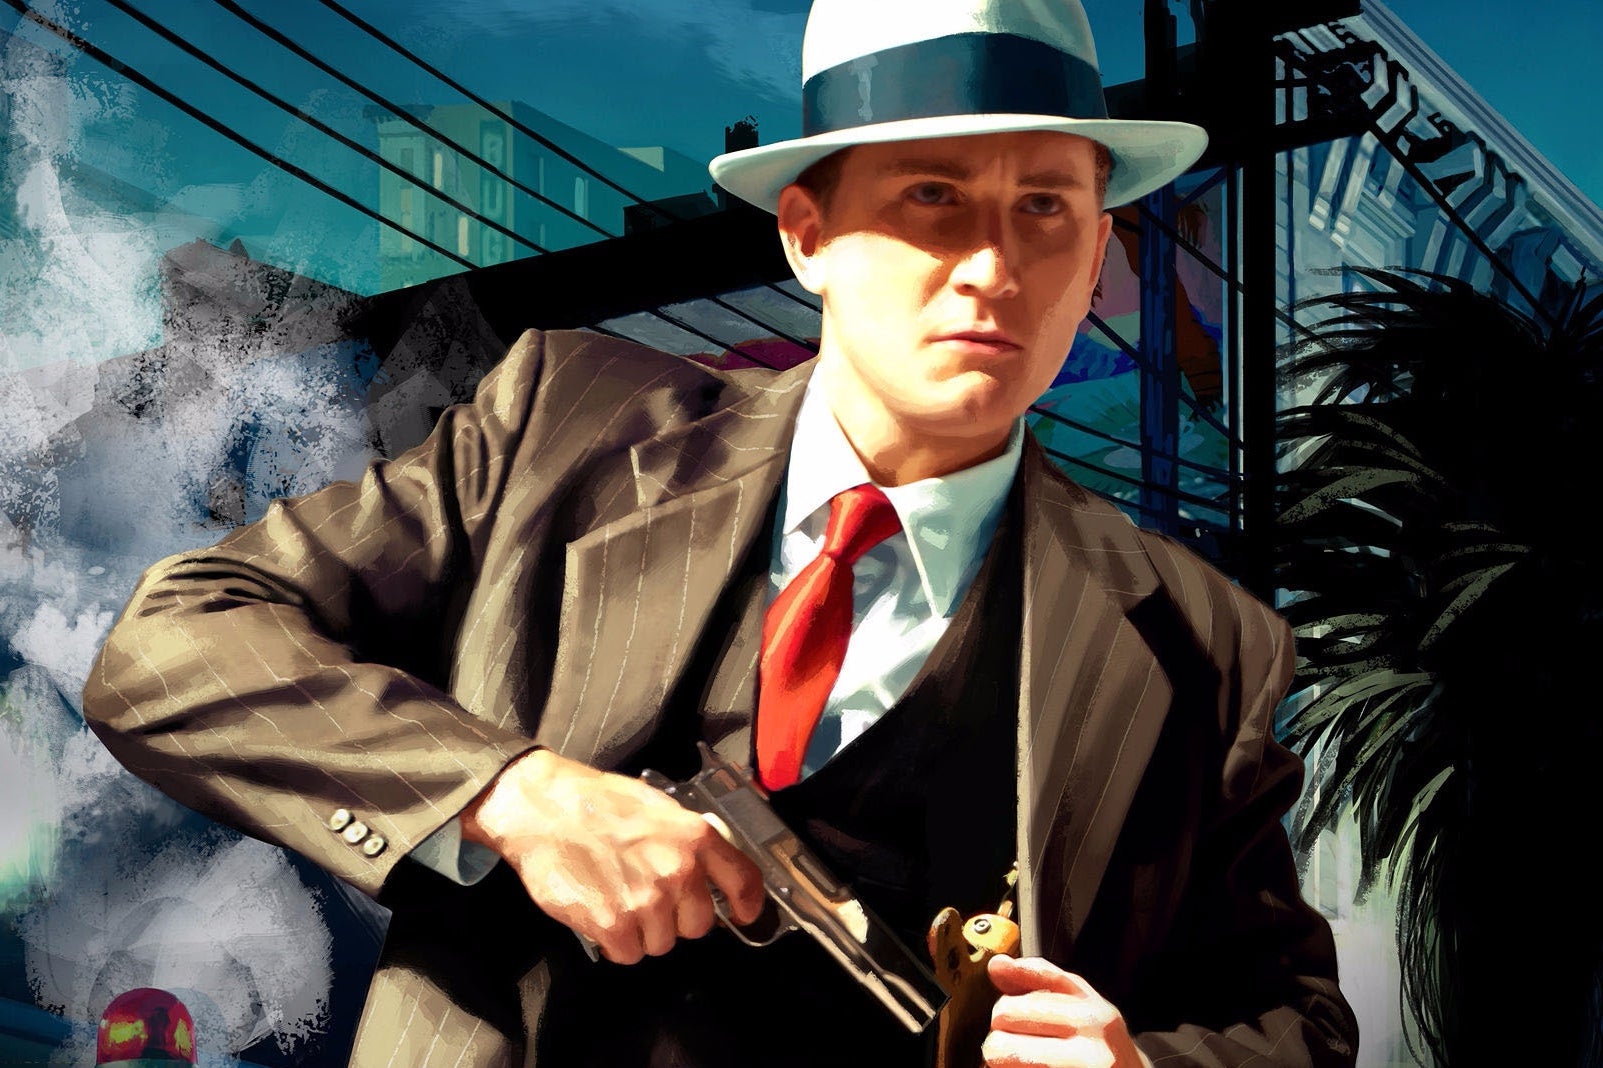 Image for Videosrovnání vylepšených verzí L.A. Noire